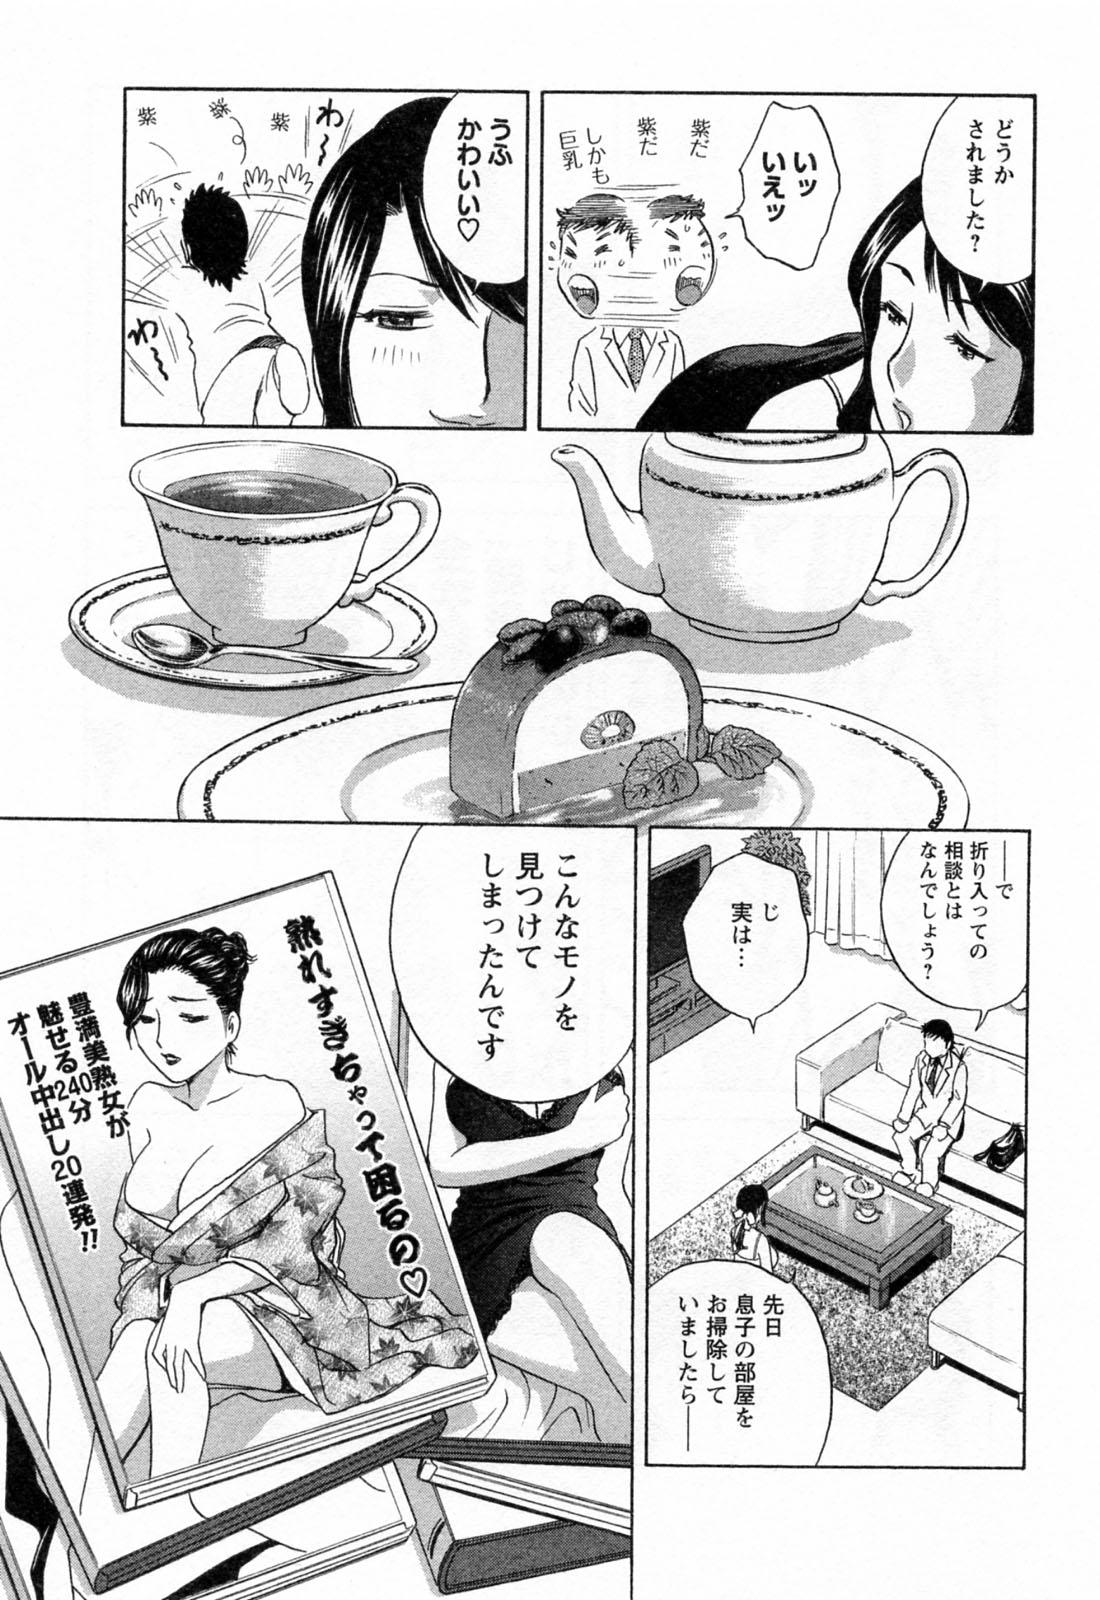 [Hidemaru] Mo-Retsu! Boin Sensei (Boing Boing Teacher) Vol.4 60